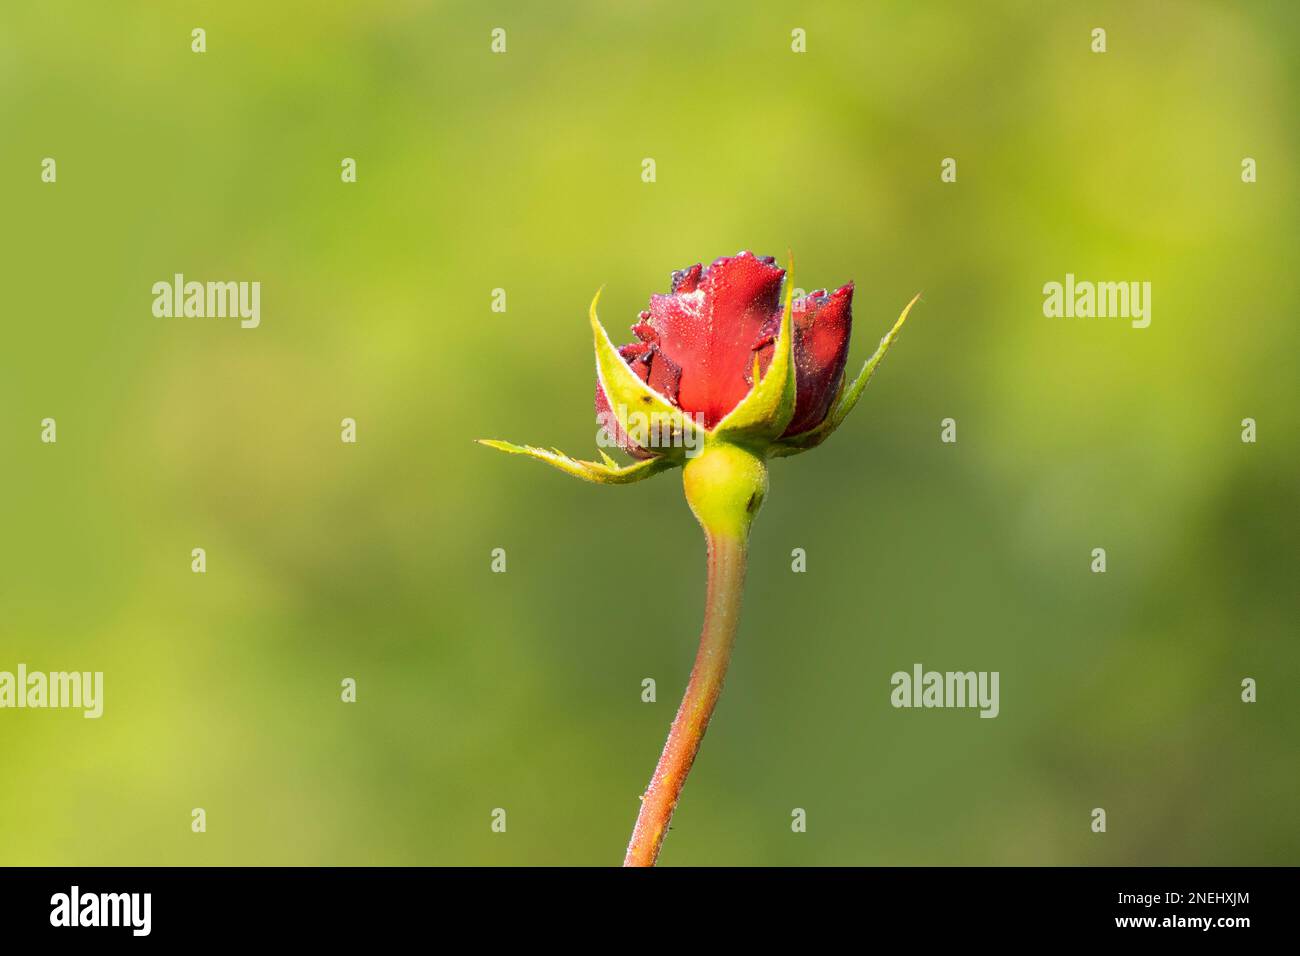 Gocce di rugiada sui petali di rosa rossa, fiore della pianta legnosa perenne fiorita del genere Rosa , Rosaceae. Fiori naturali al mattino d'inverno Foto Stock